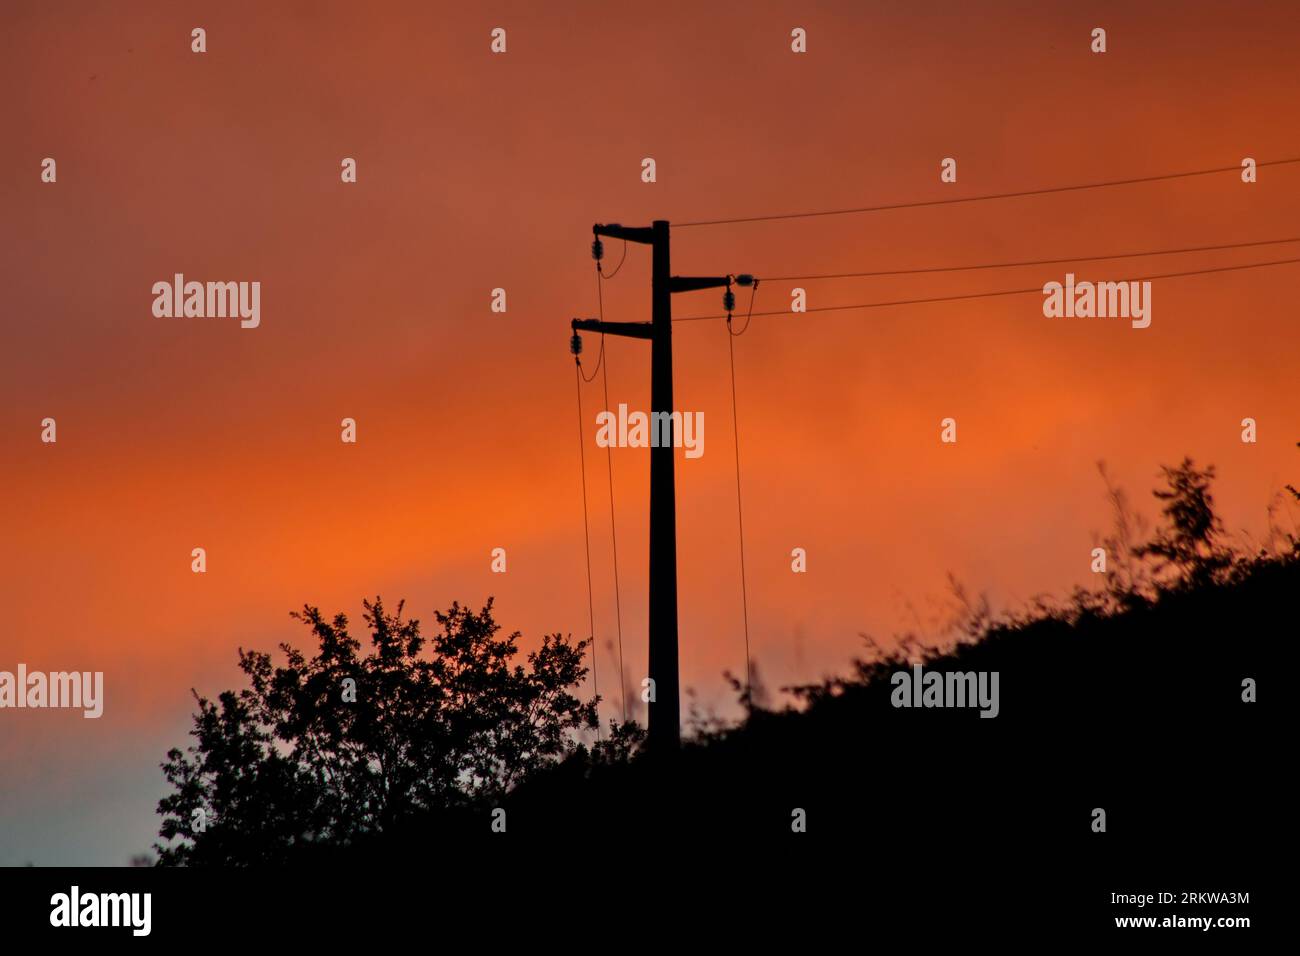 palo dell'elettricità contro un cielo arancio Stock Photo